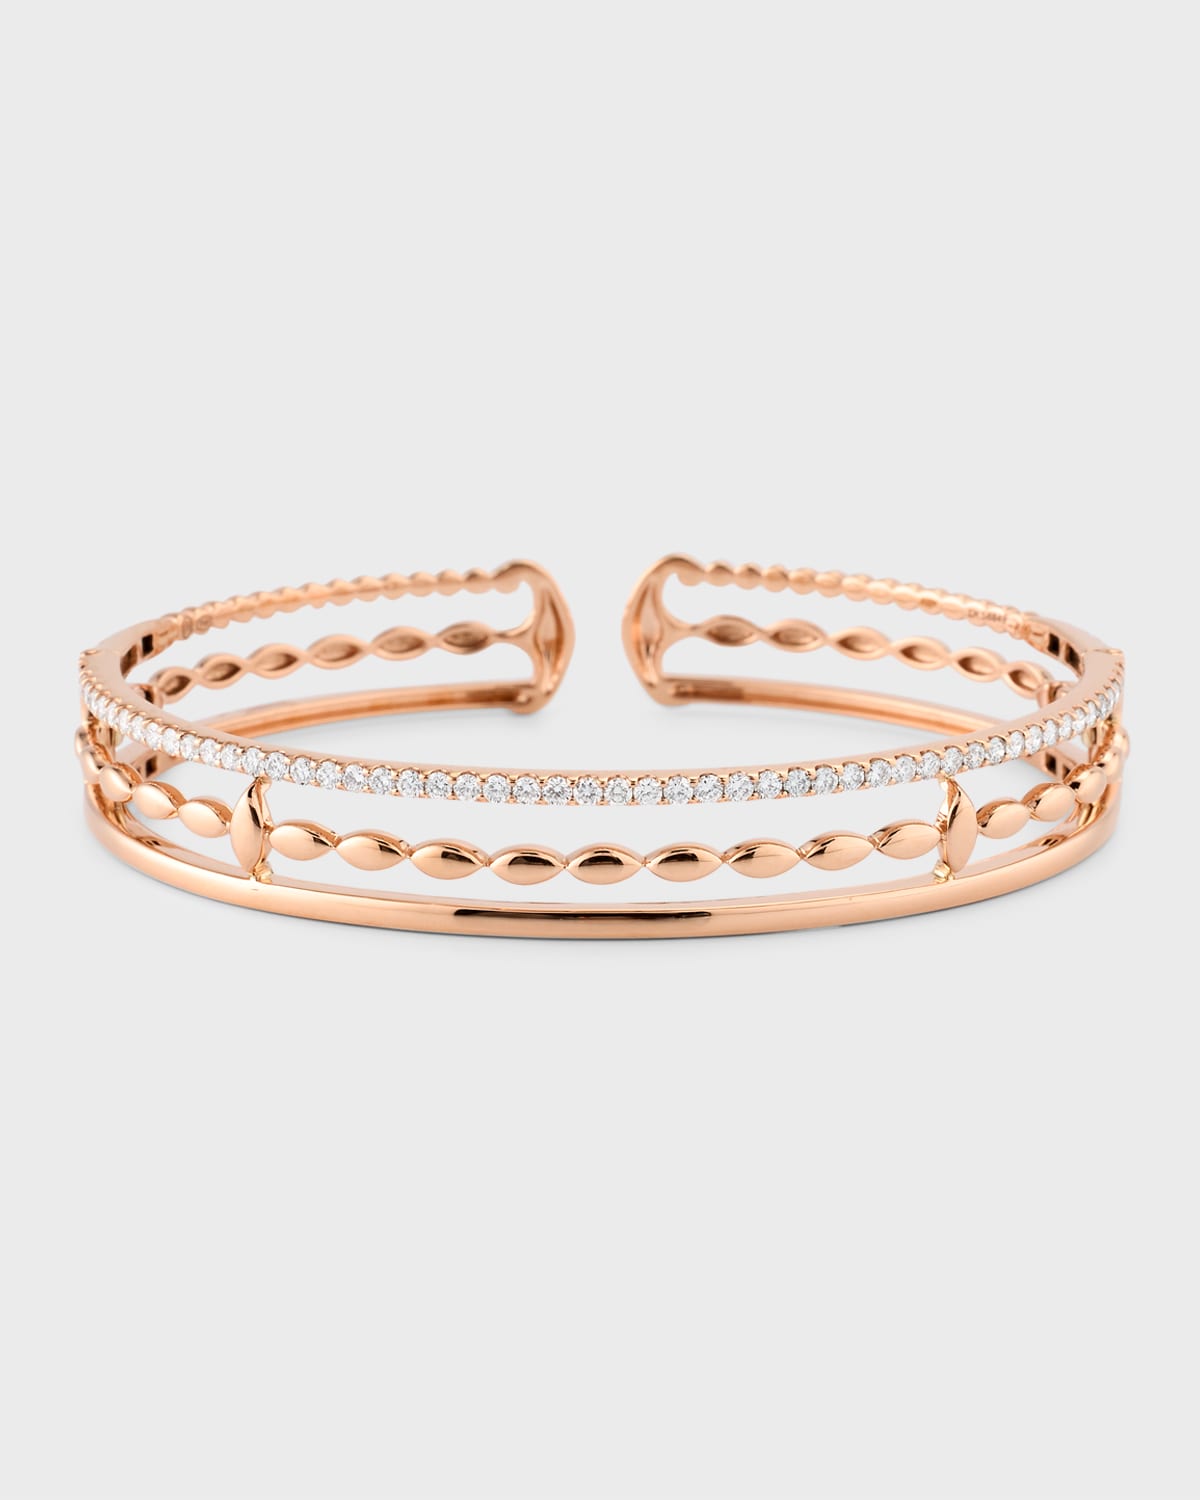 18K Pink Gold 3 Row Bracelet with Diamonds